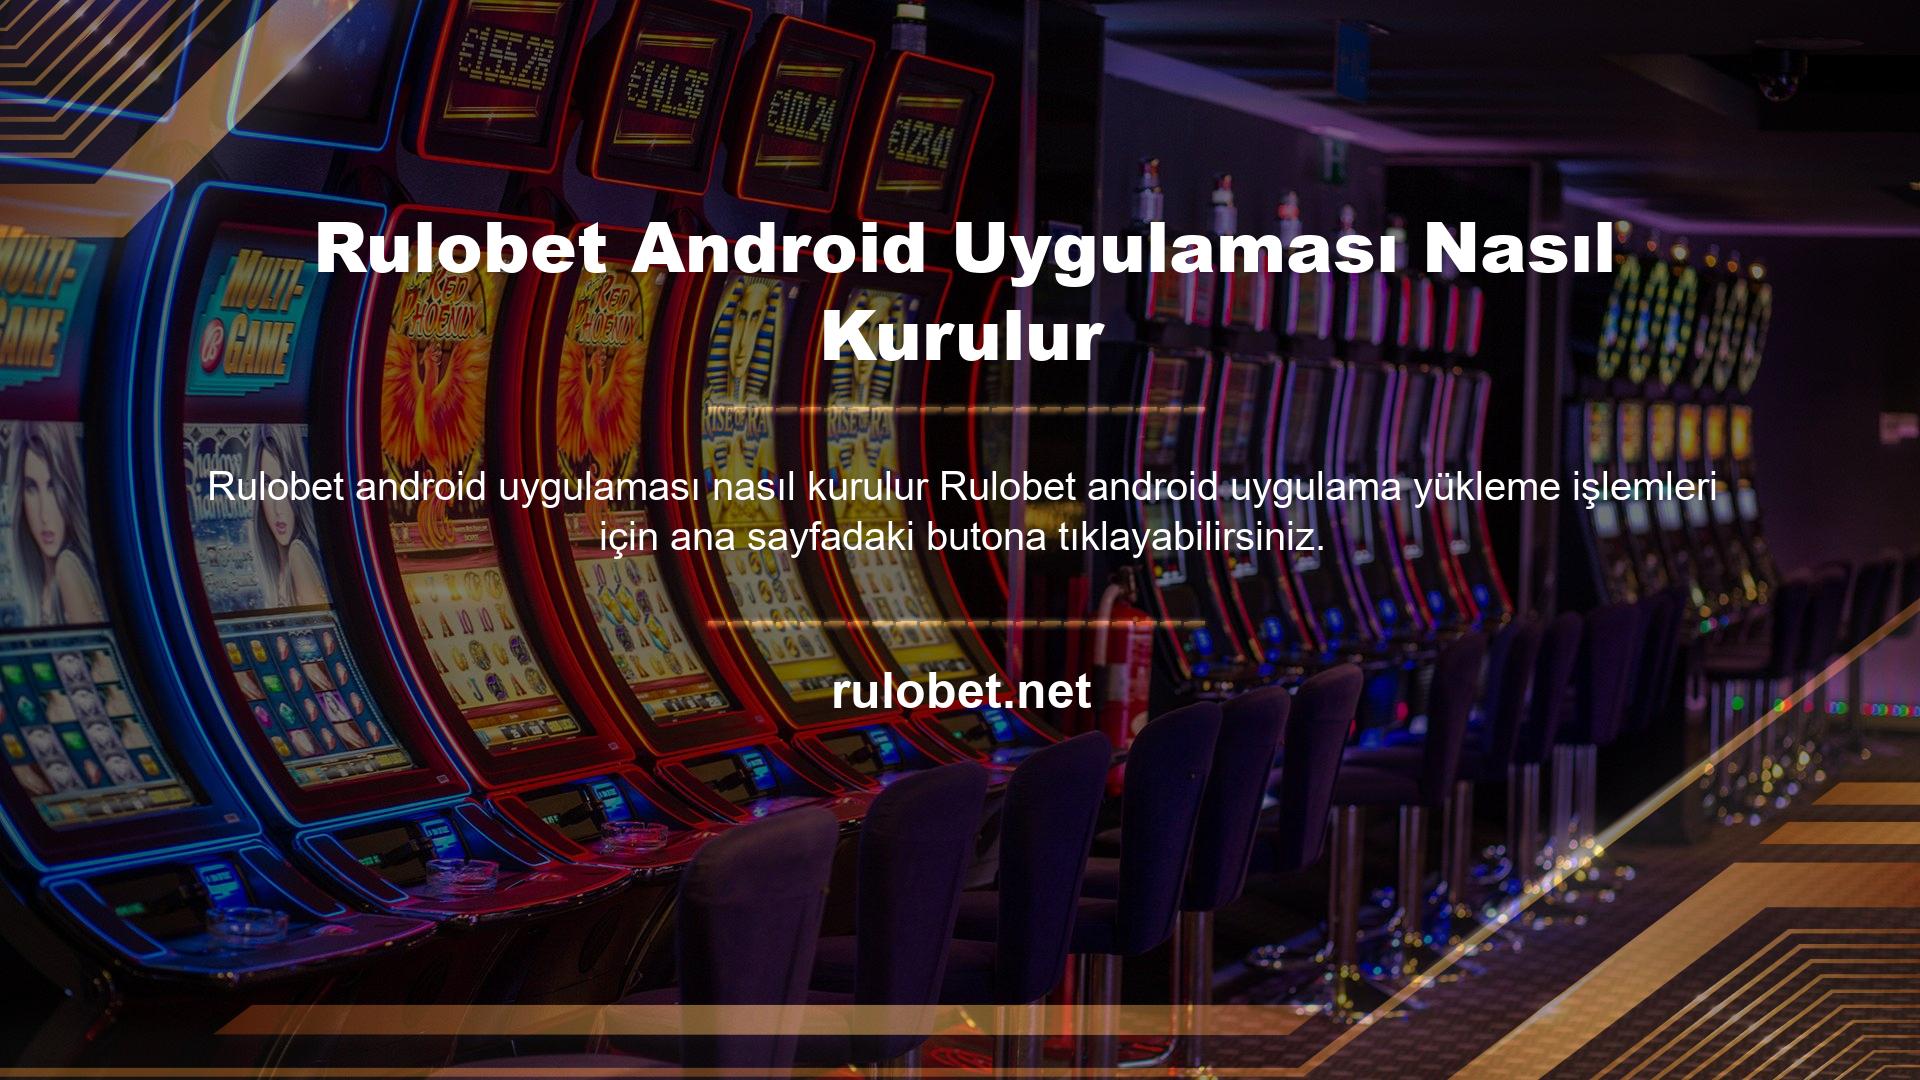 Rulobet Android Uygulaması Nasıl Kurulur